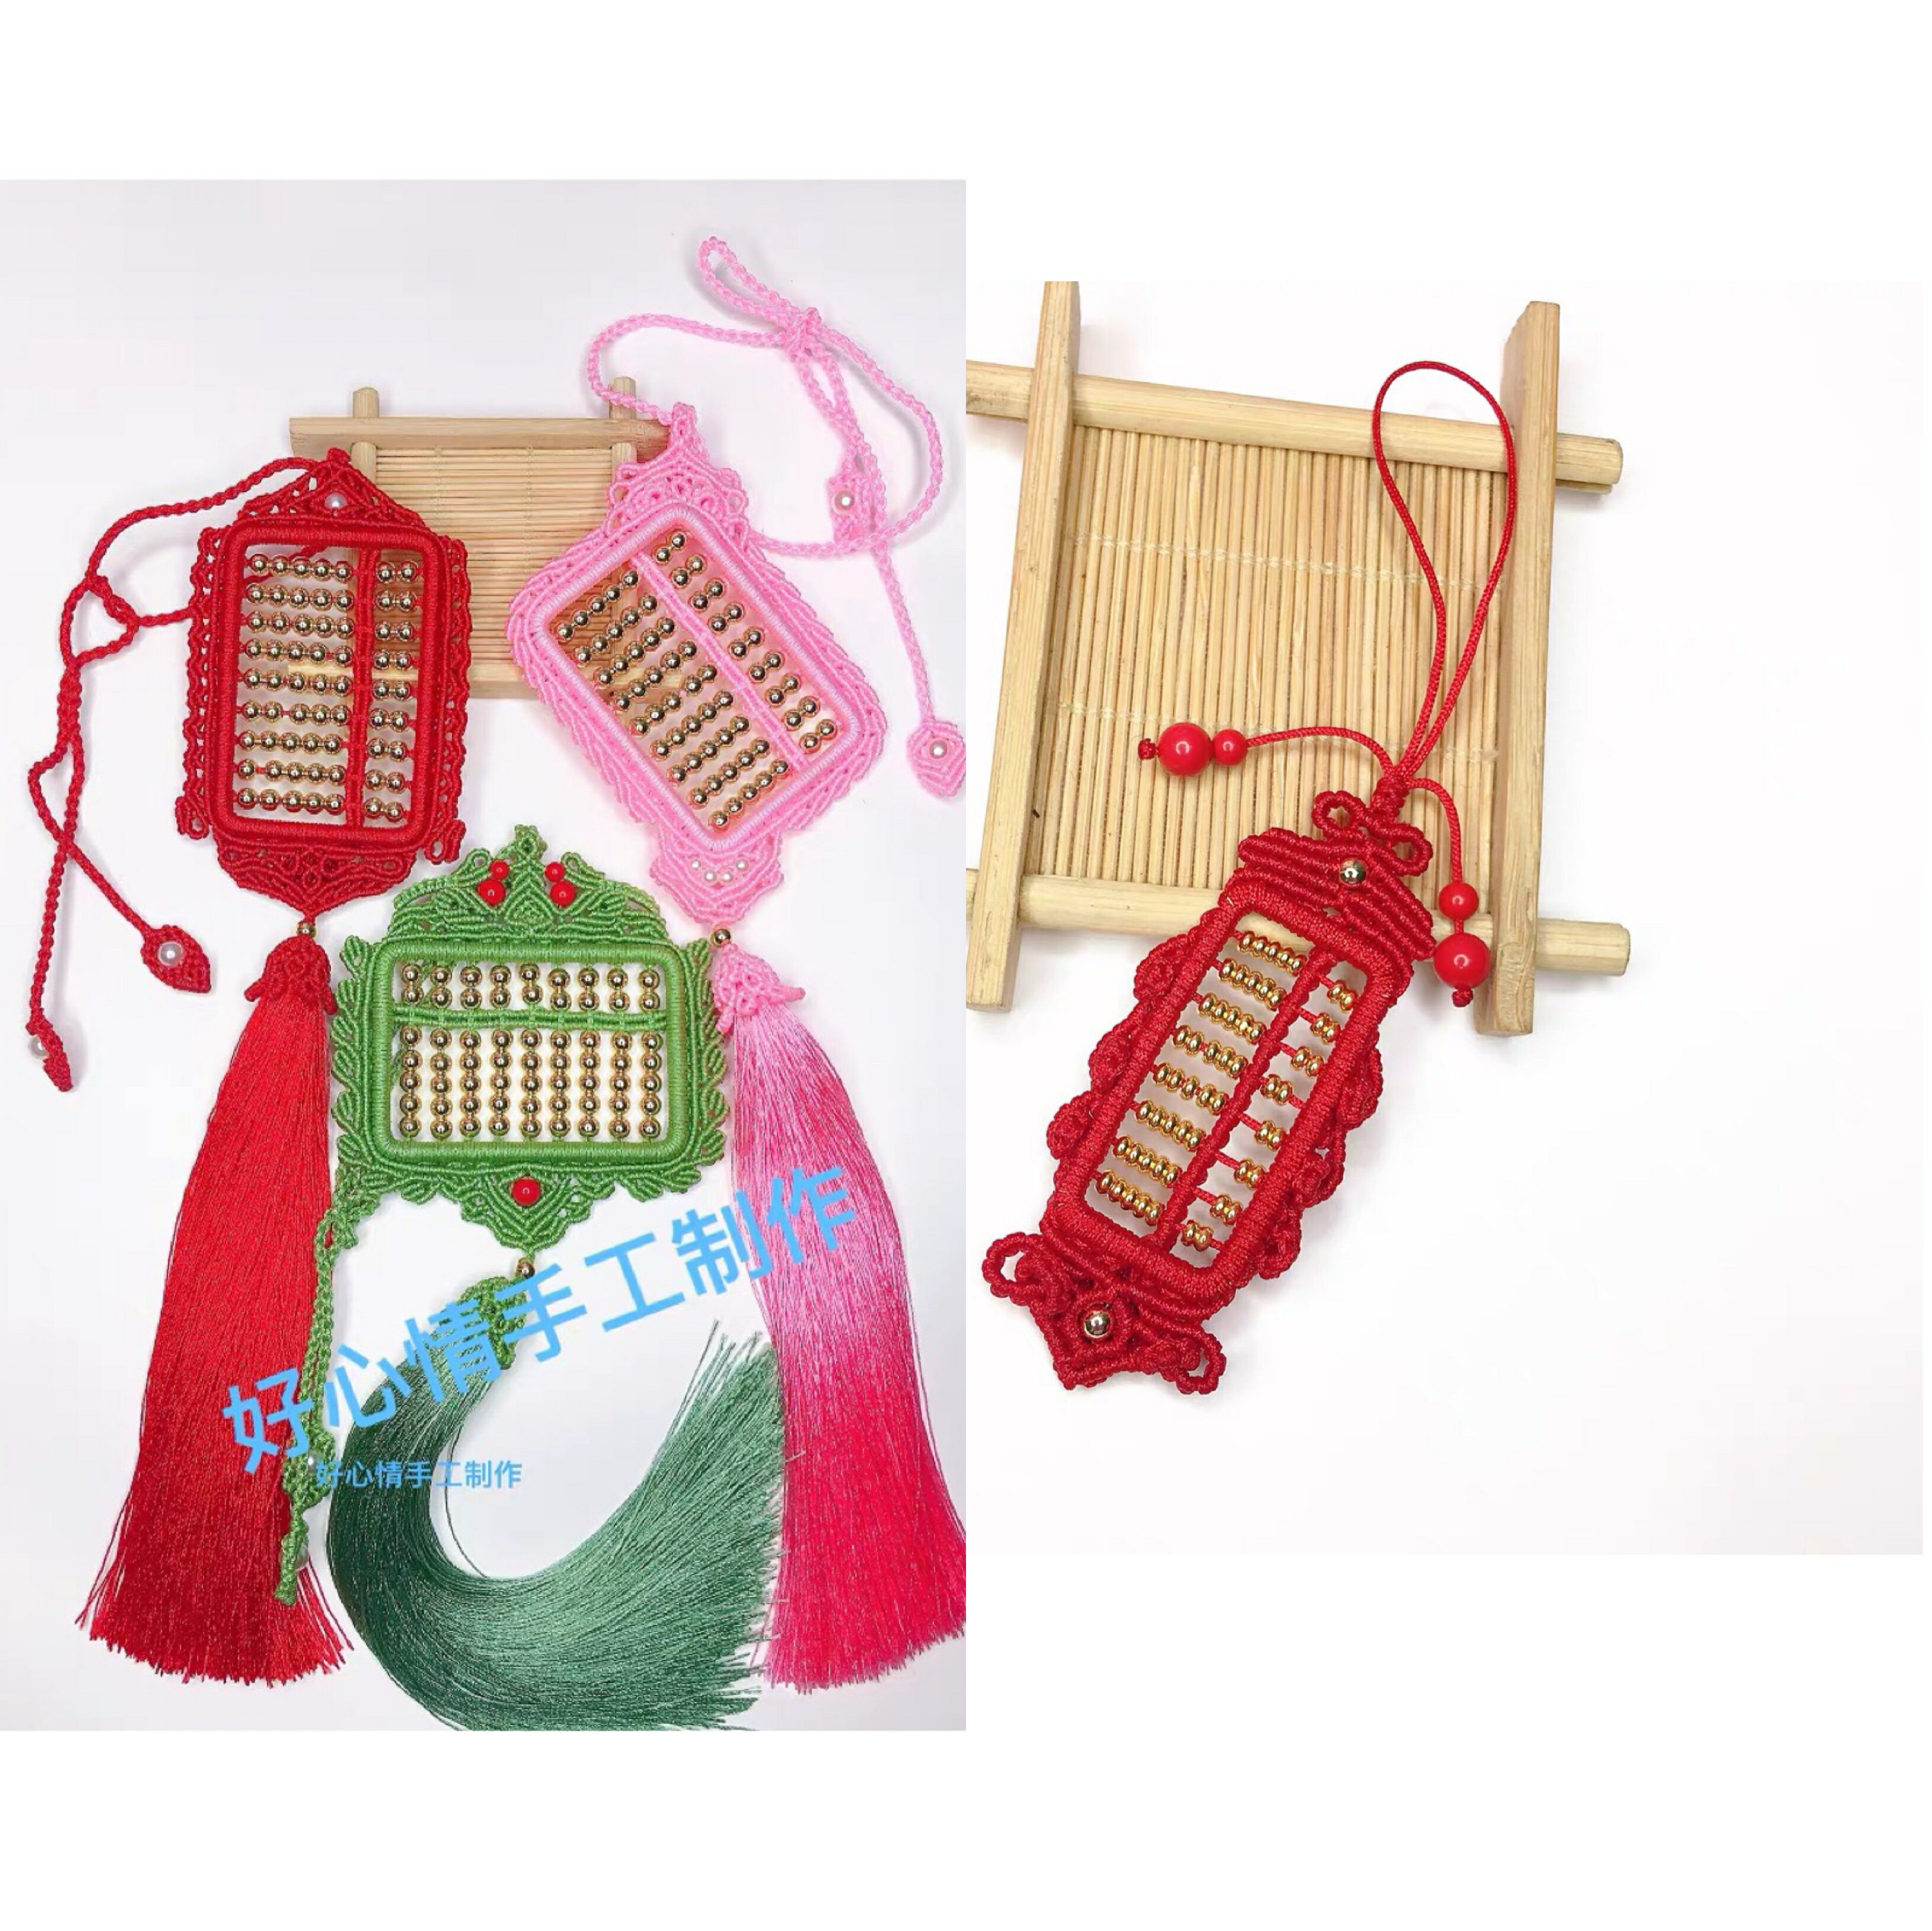 好心情手工編織算盤車掛件diy自制中國結紅繩創意禮品掛飾材料包